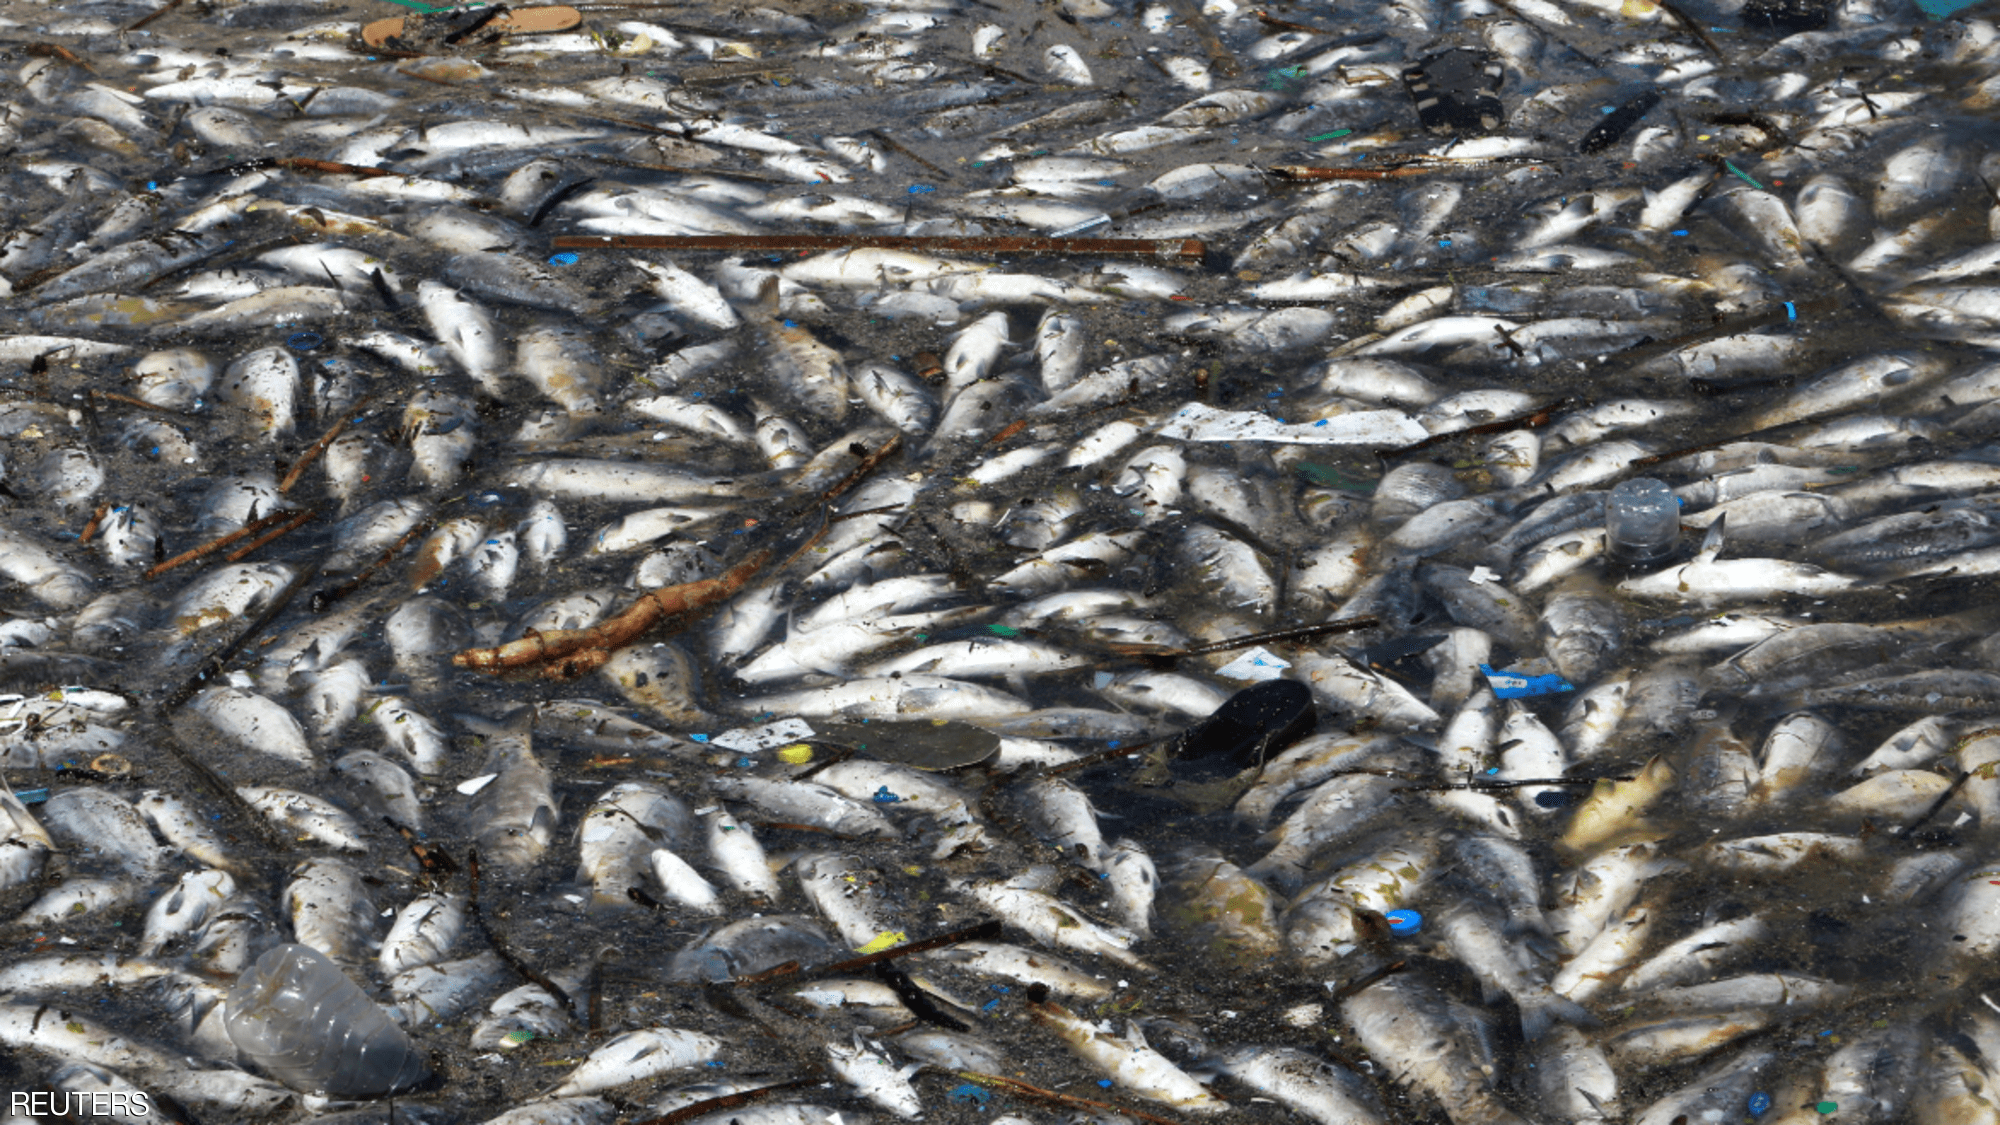 الأسماك النافقة بنهر الليطاني في لبنان سببها الإهمال